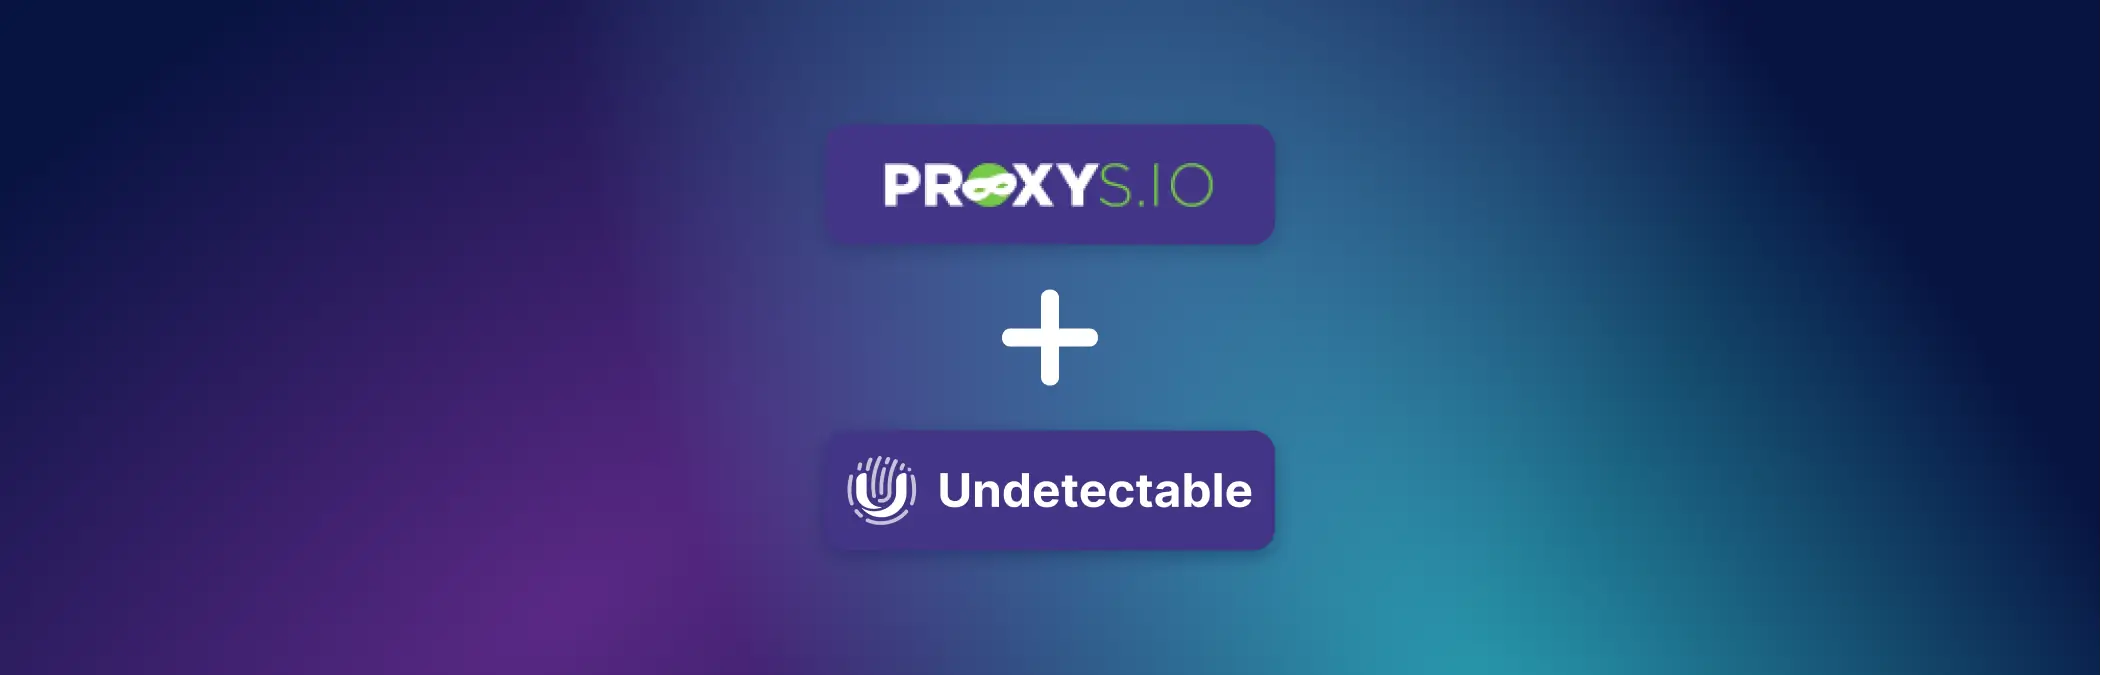 Cách sử dụng Proxys.io trong trình duyệt Undetectable: hướng dẫn chi tiết